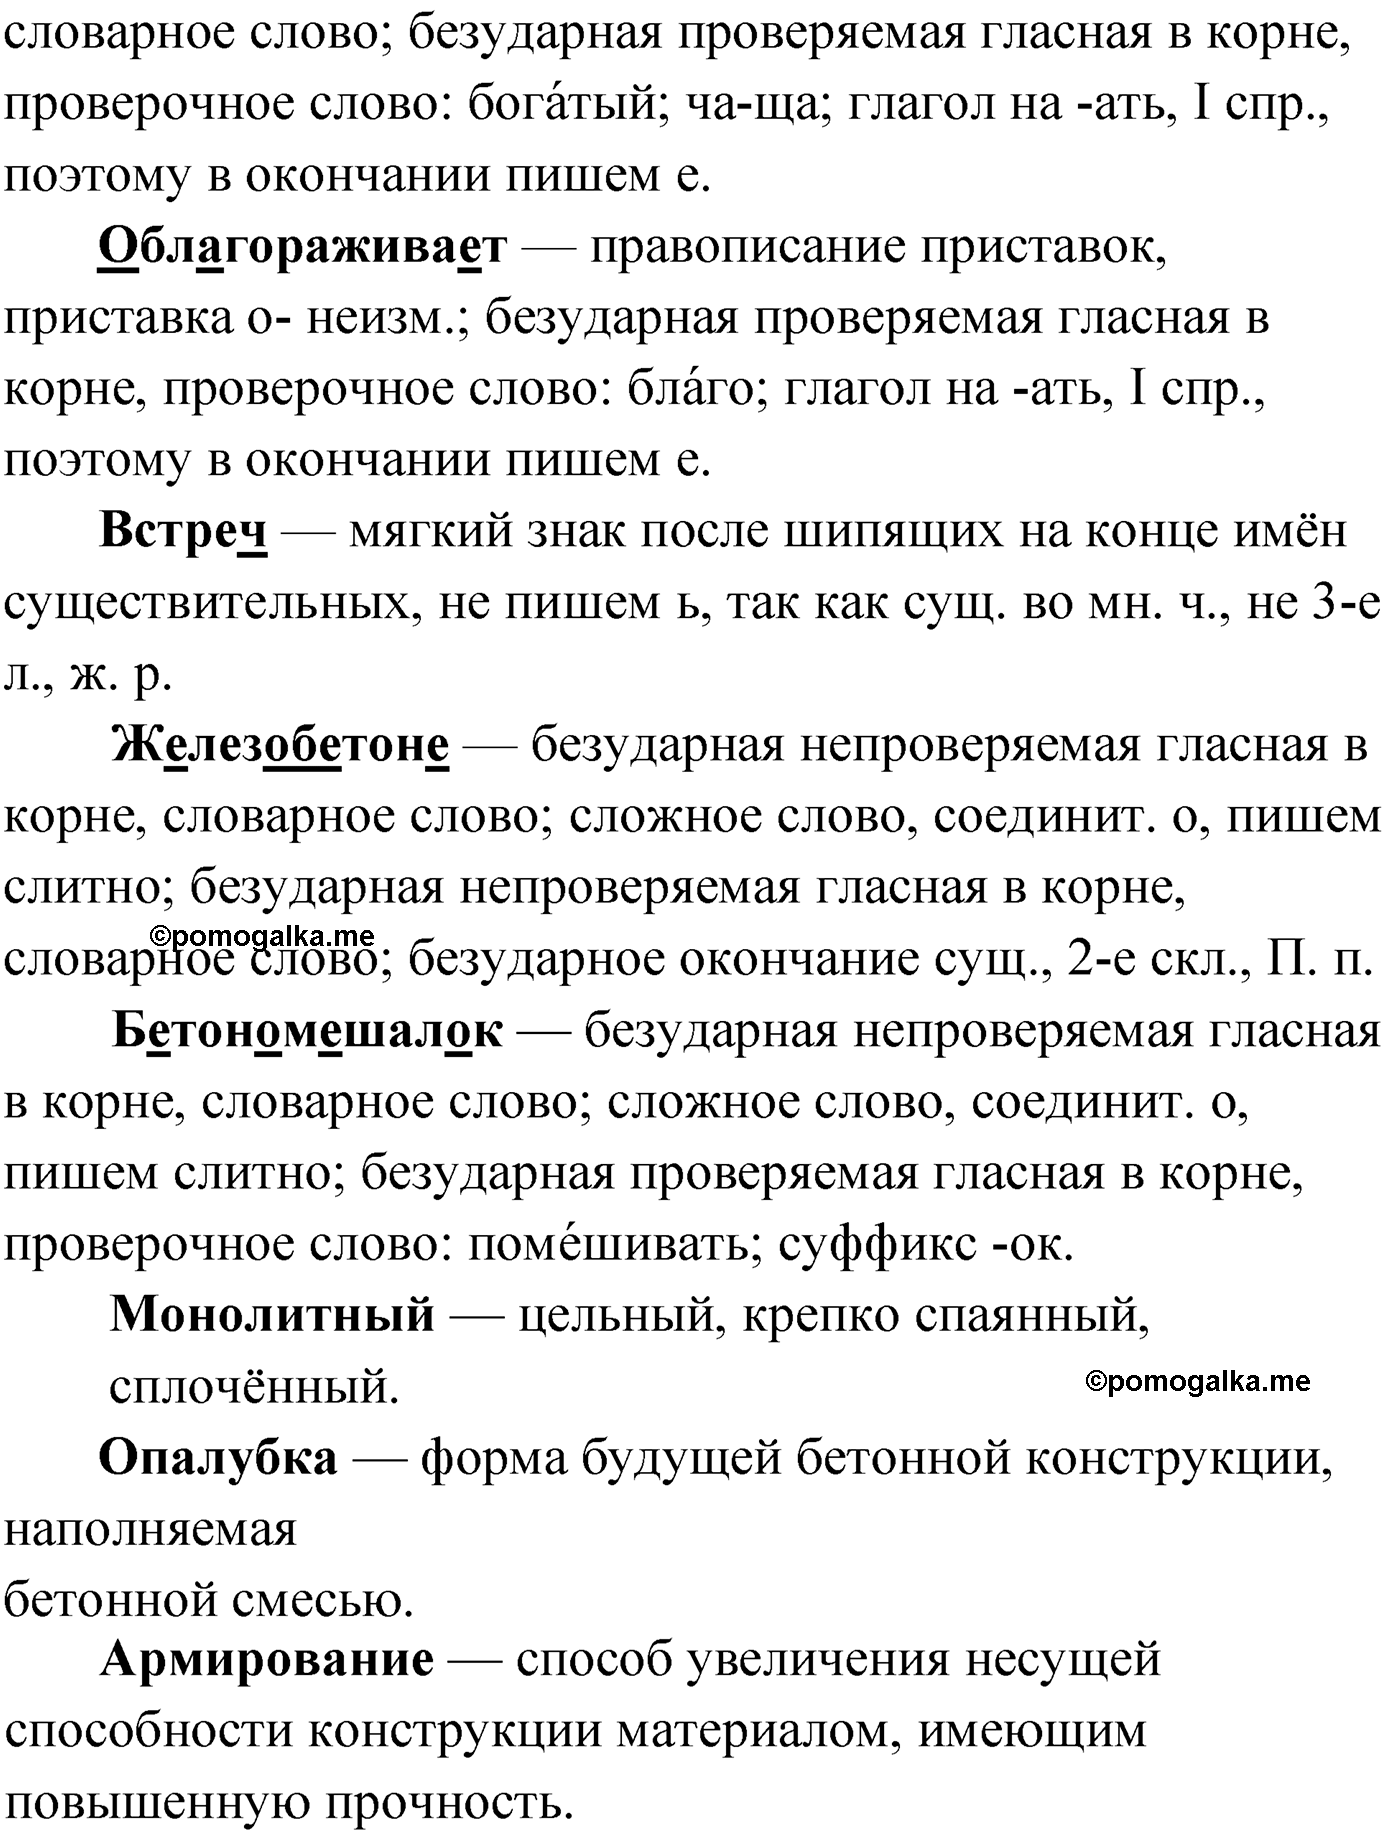 упражнение №14 русский язык 9 класс Мурина 2019 год